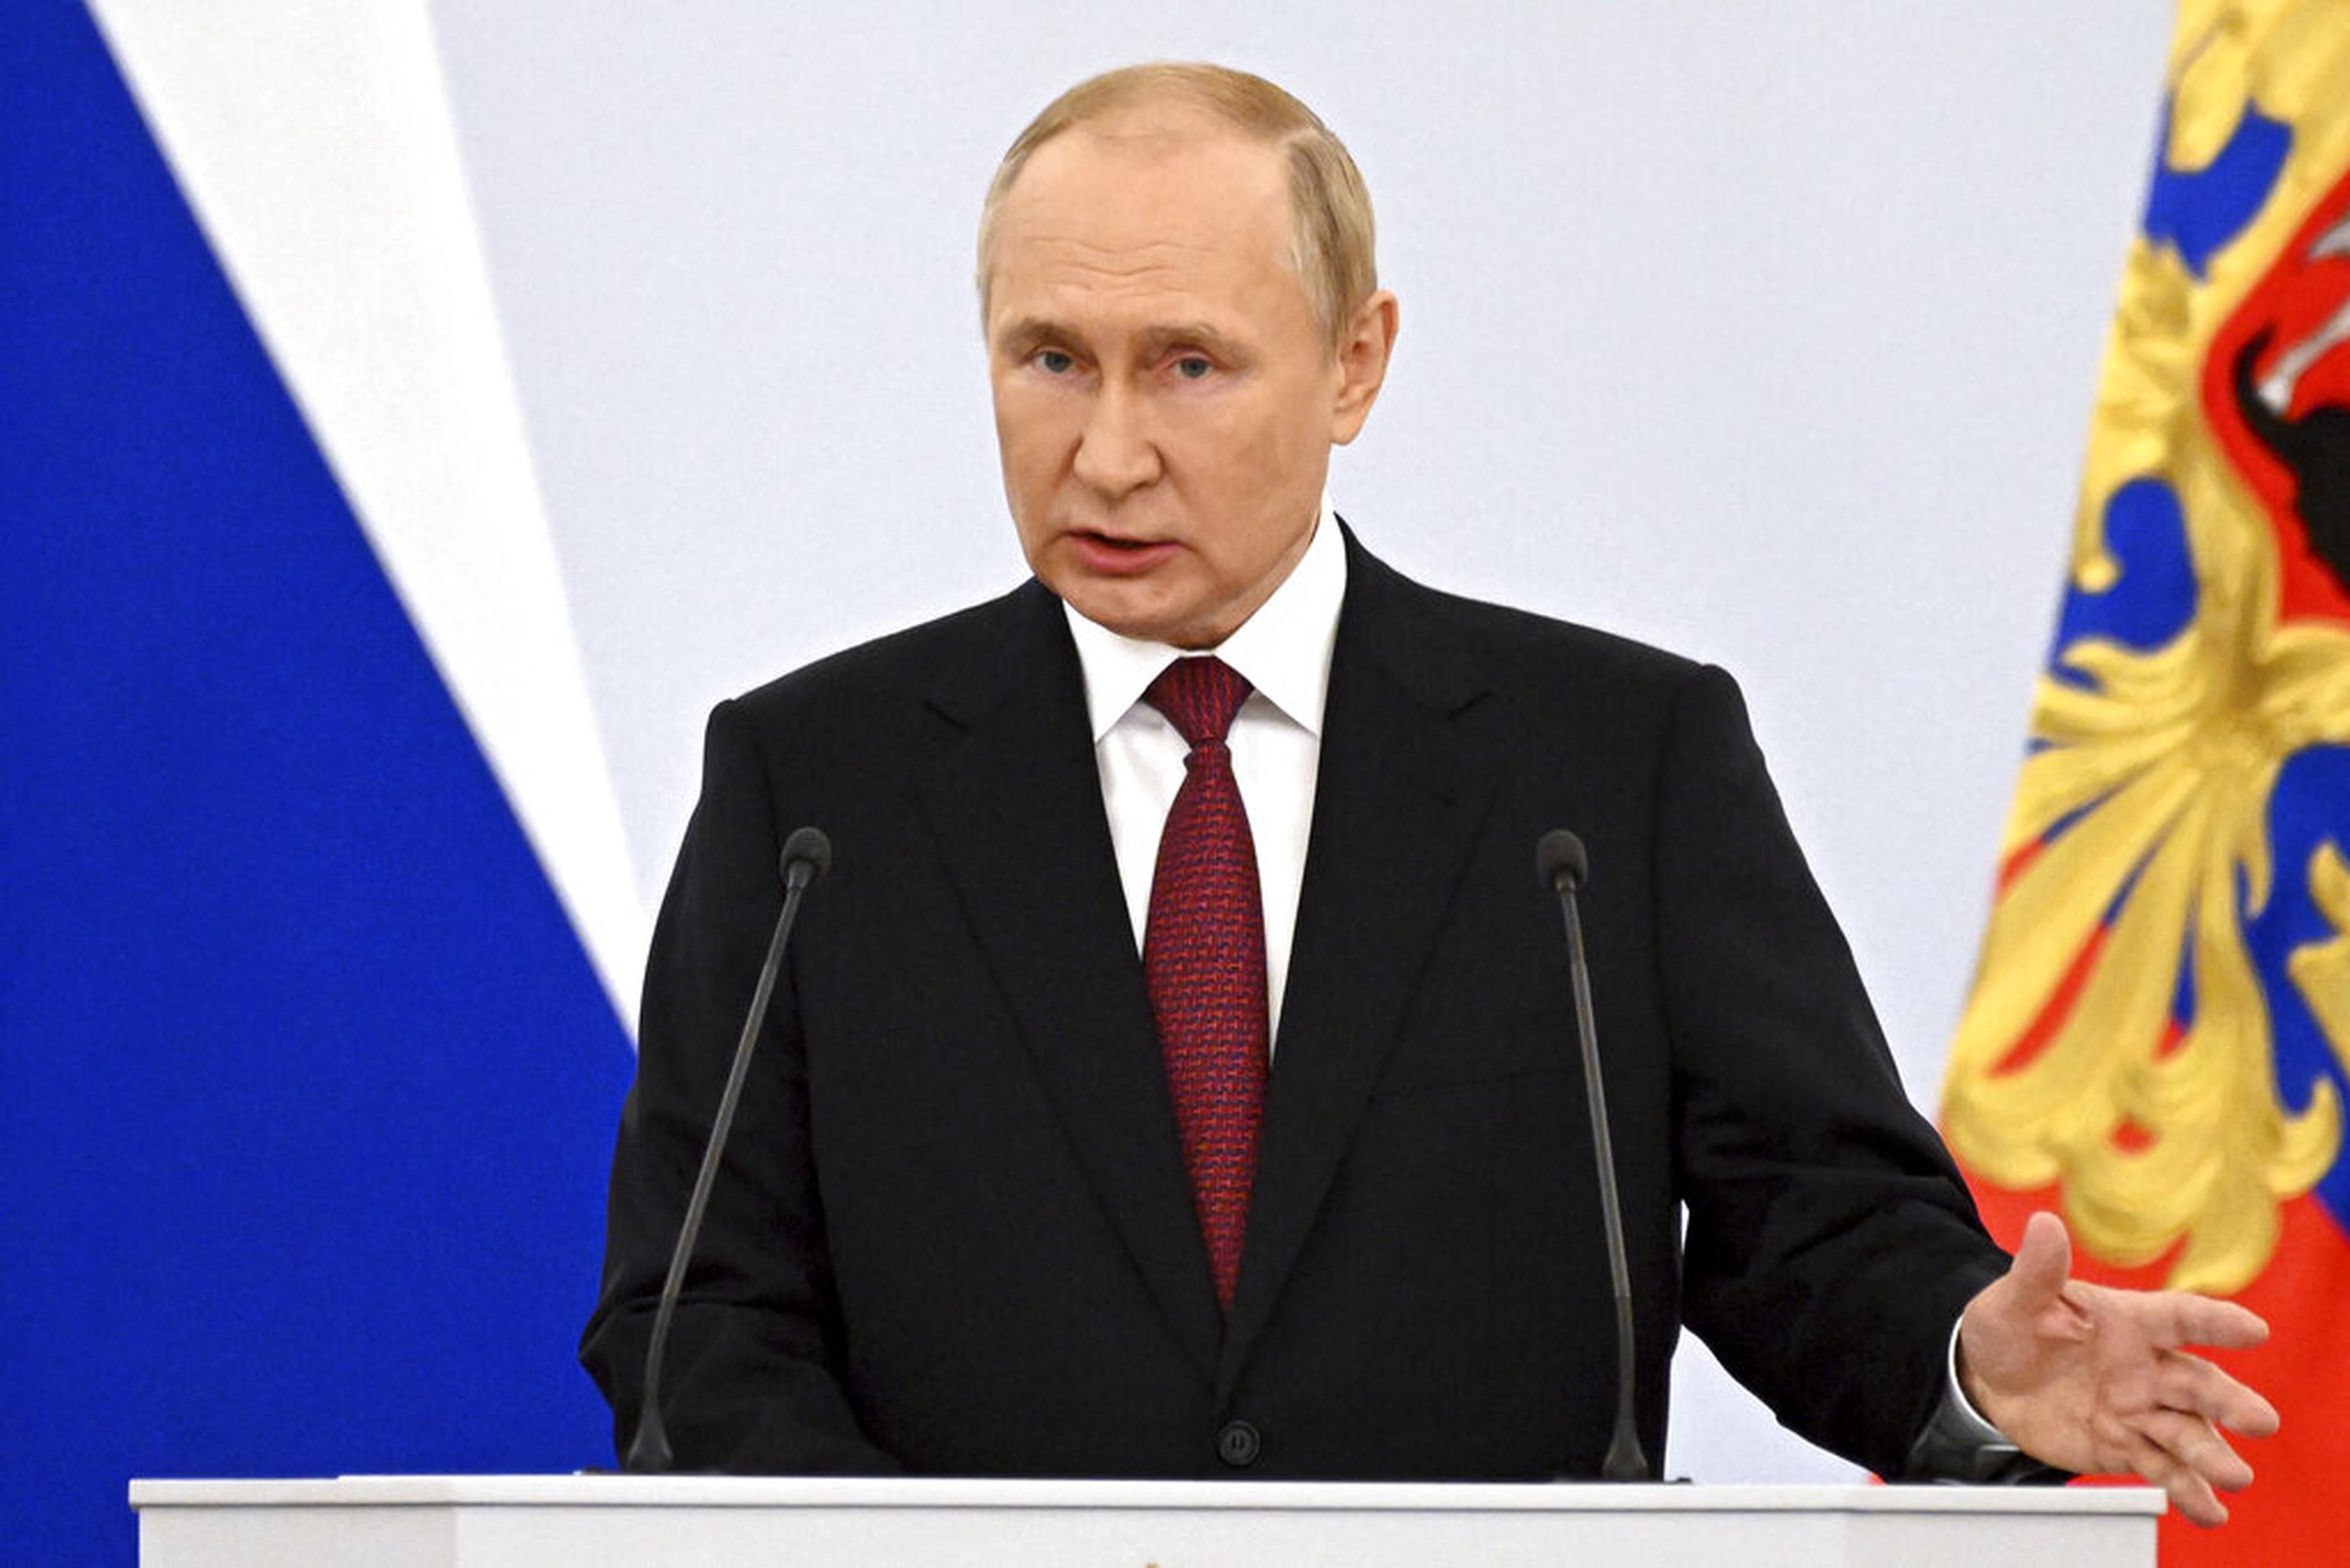 El presidente ruso Vladimir Putin habló hoy en un acto para festejar la incorporación a Rusia de regiones ocupadas de Ucrania, en la Plaza Roja de Moscú.